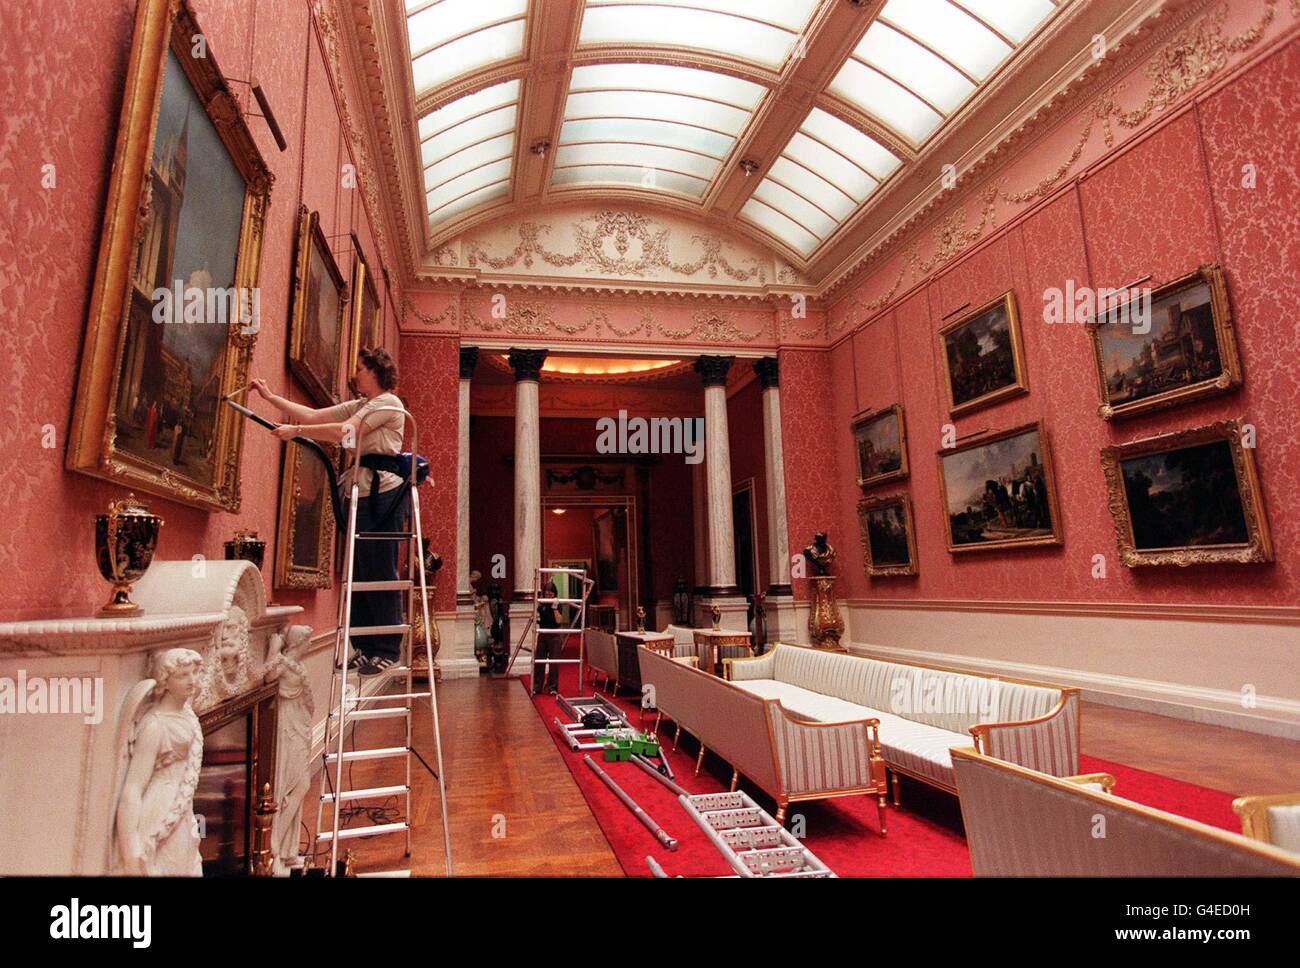 Heute (Freitag) staubt ein Reiniger die Bilderrahmen in der Bildergalerie am Buckingham Palace, um die Eröffnung für die Öffentlichkeit vom 6. August bis zum 4. Oktober vorzubereiten. Foto von Sean Dempsey. Stockfoto